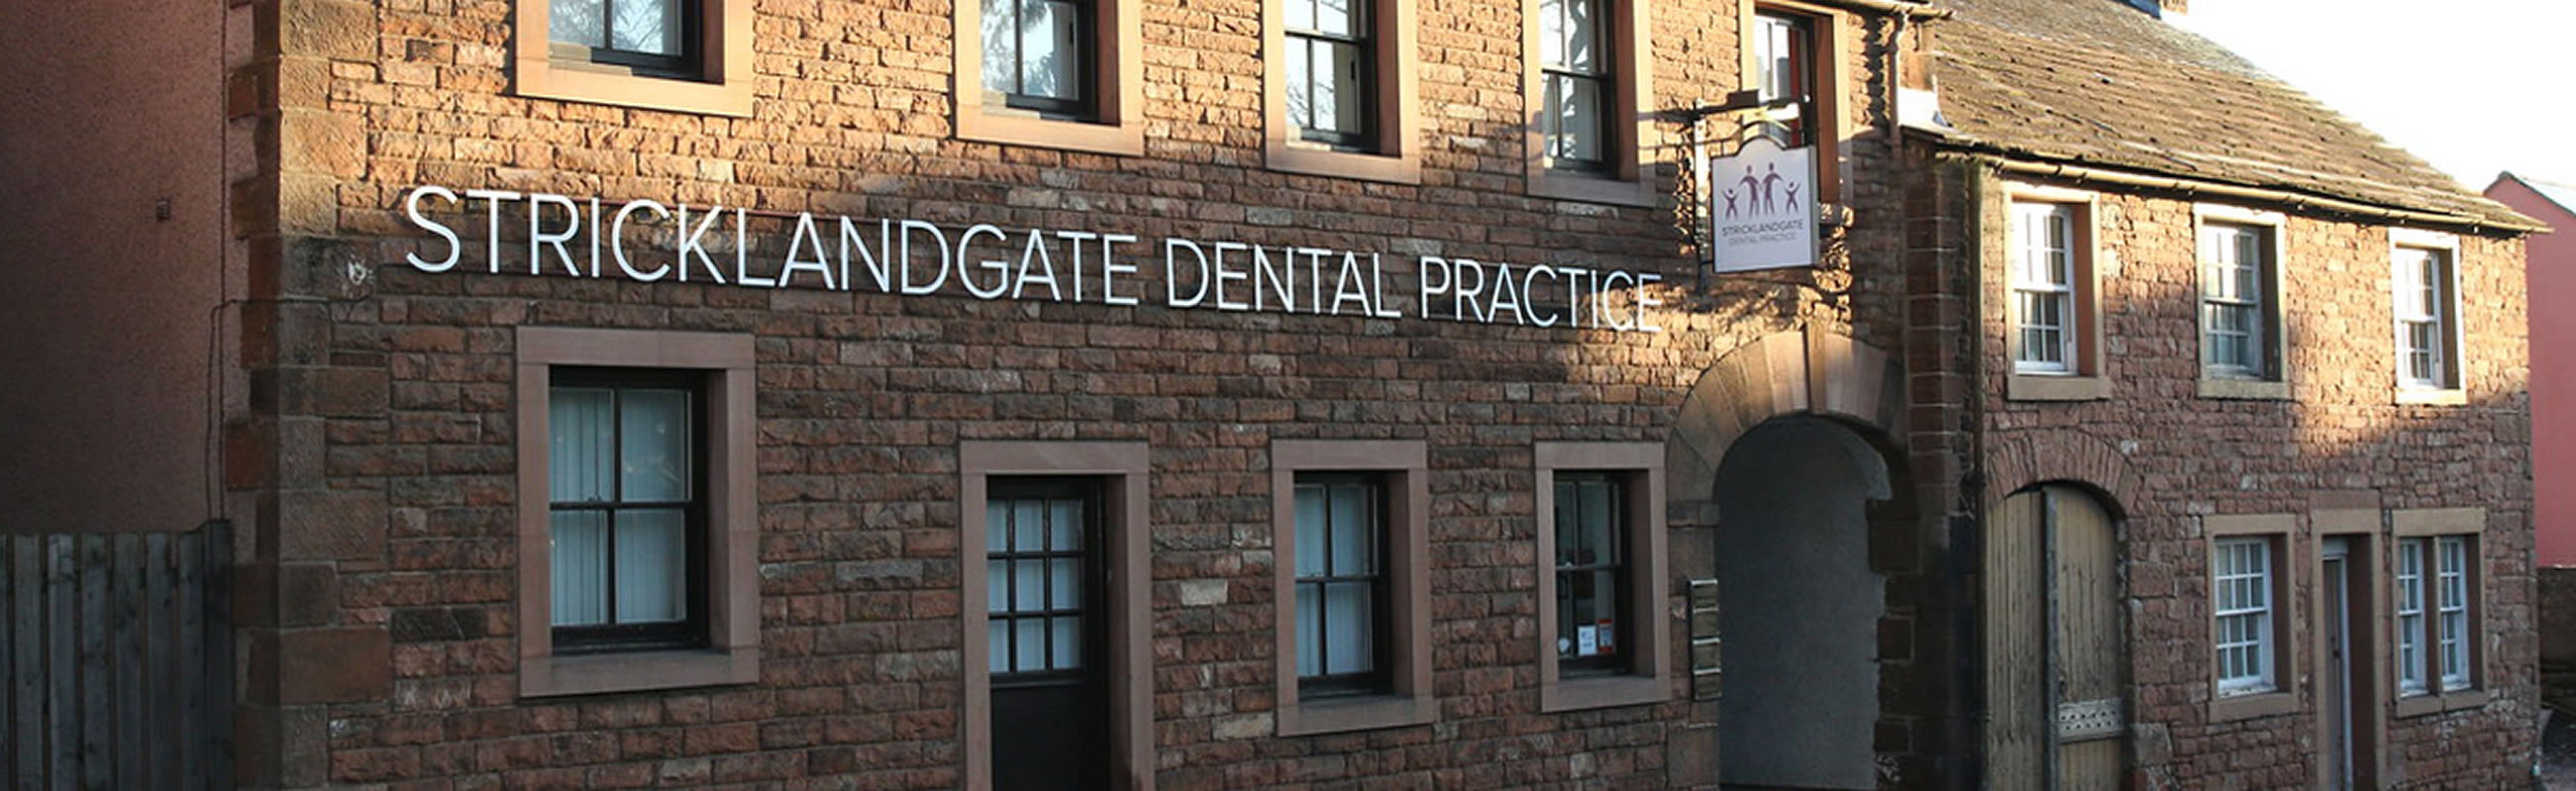 Stricklandgate Dental Practice in Penrith, Cumbria